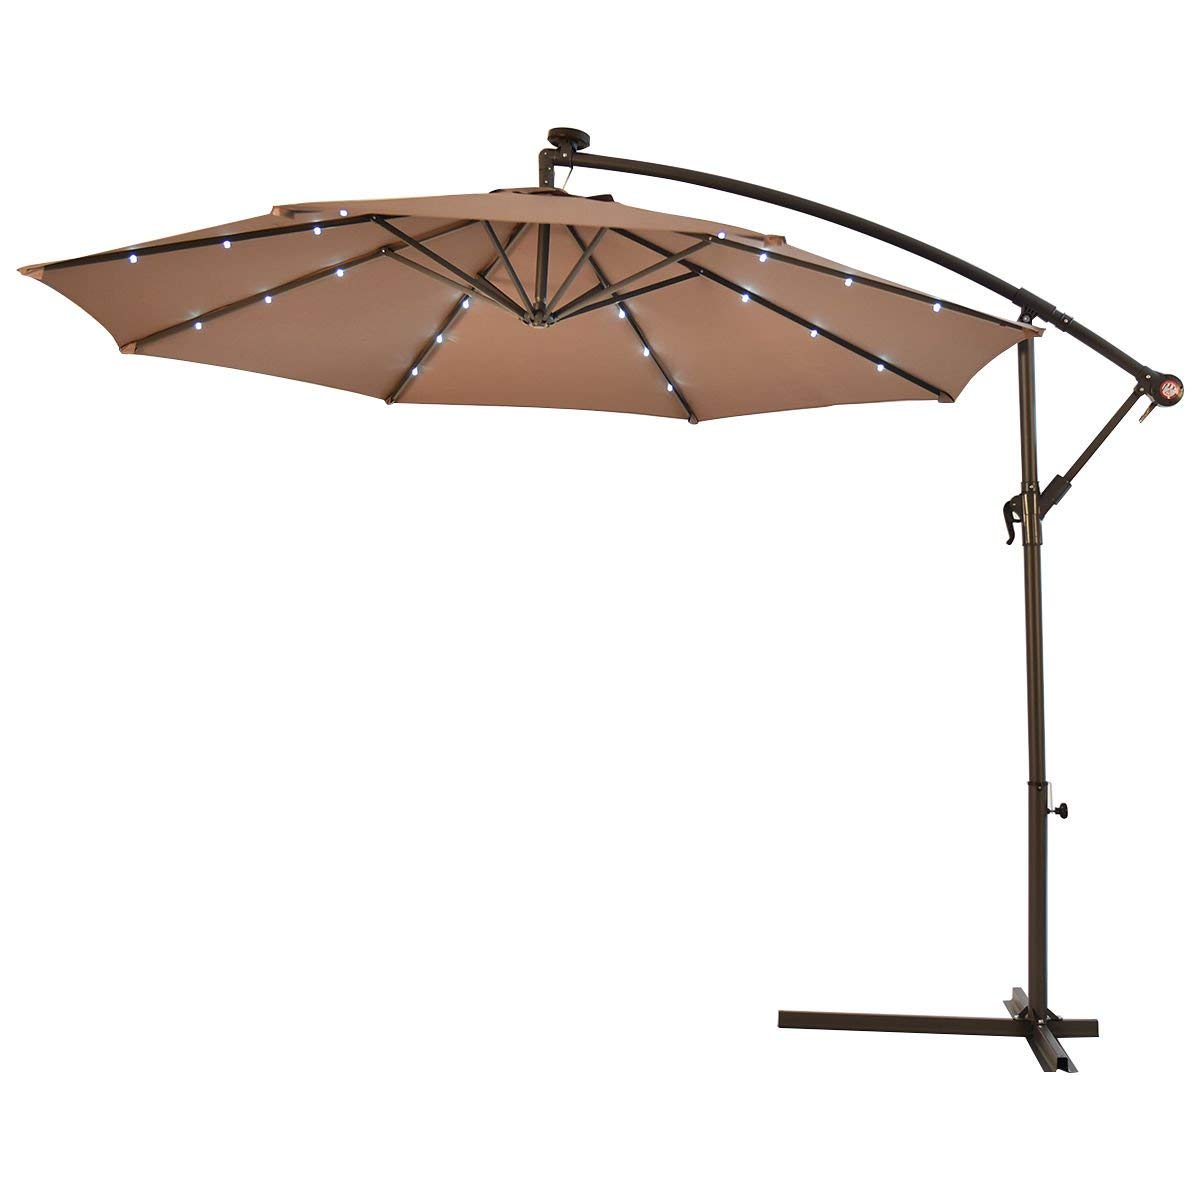 The advantages and characteristics of Alunotec Outdoor Umbrella 